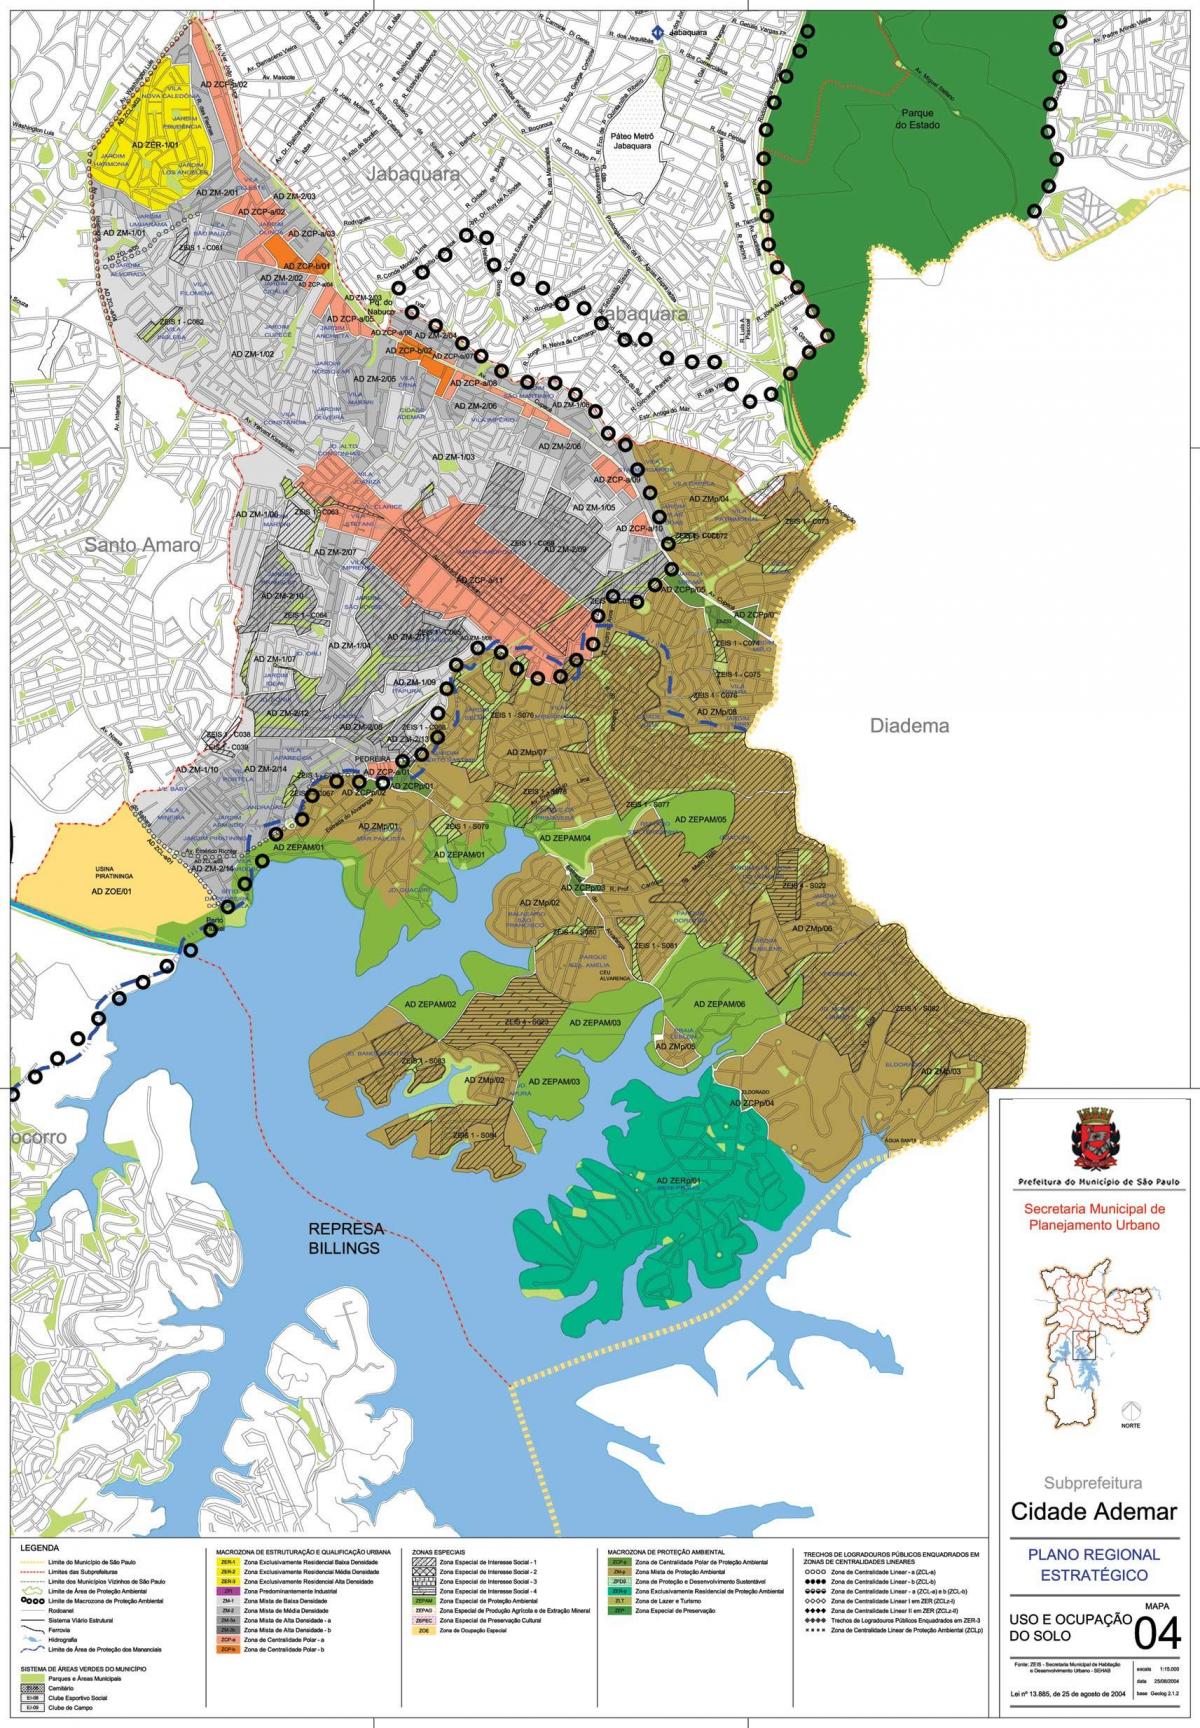 نقشه کیدد ادمر São Paulo - اشغال خاک